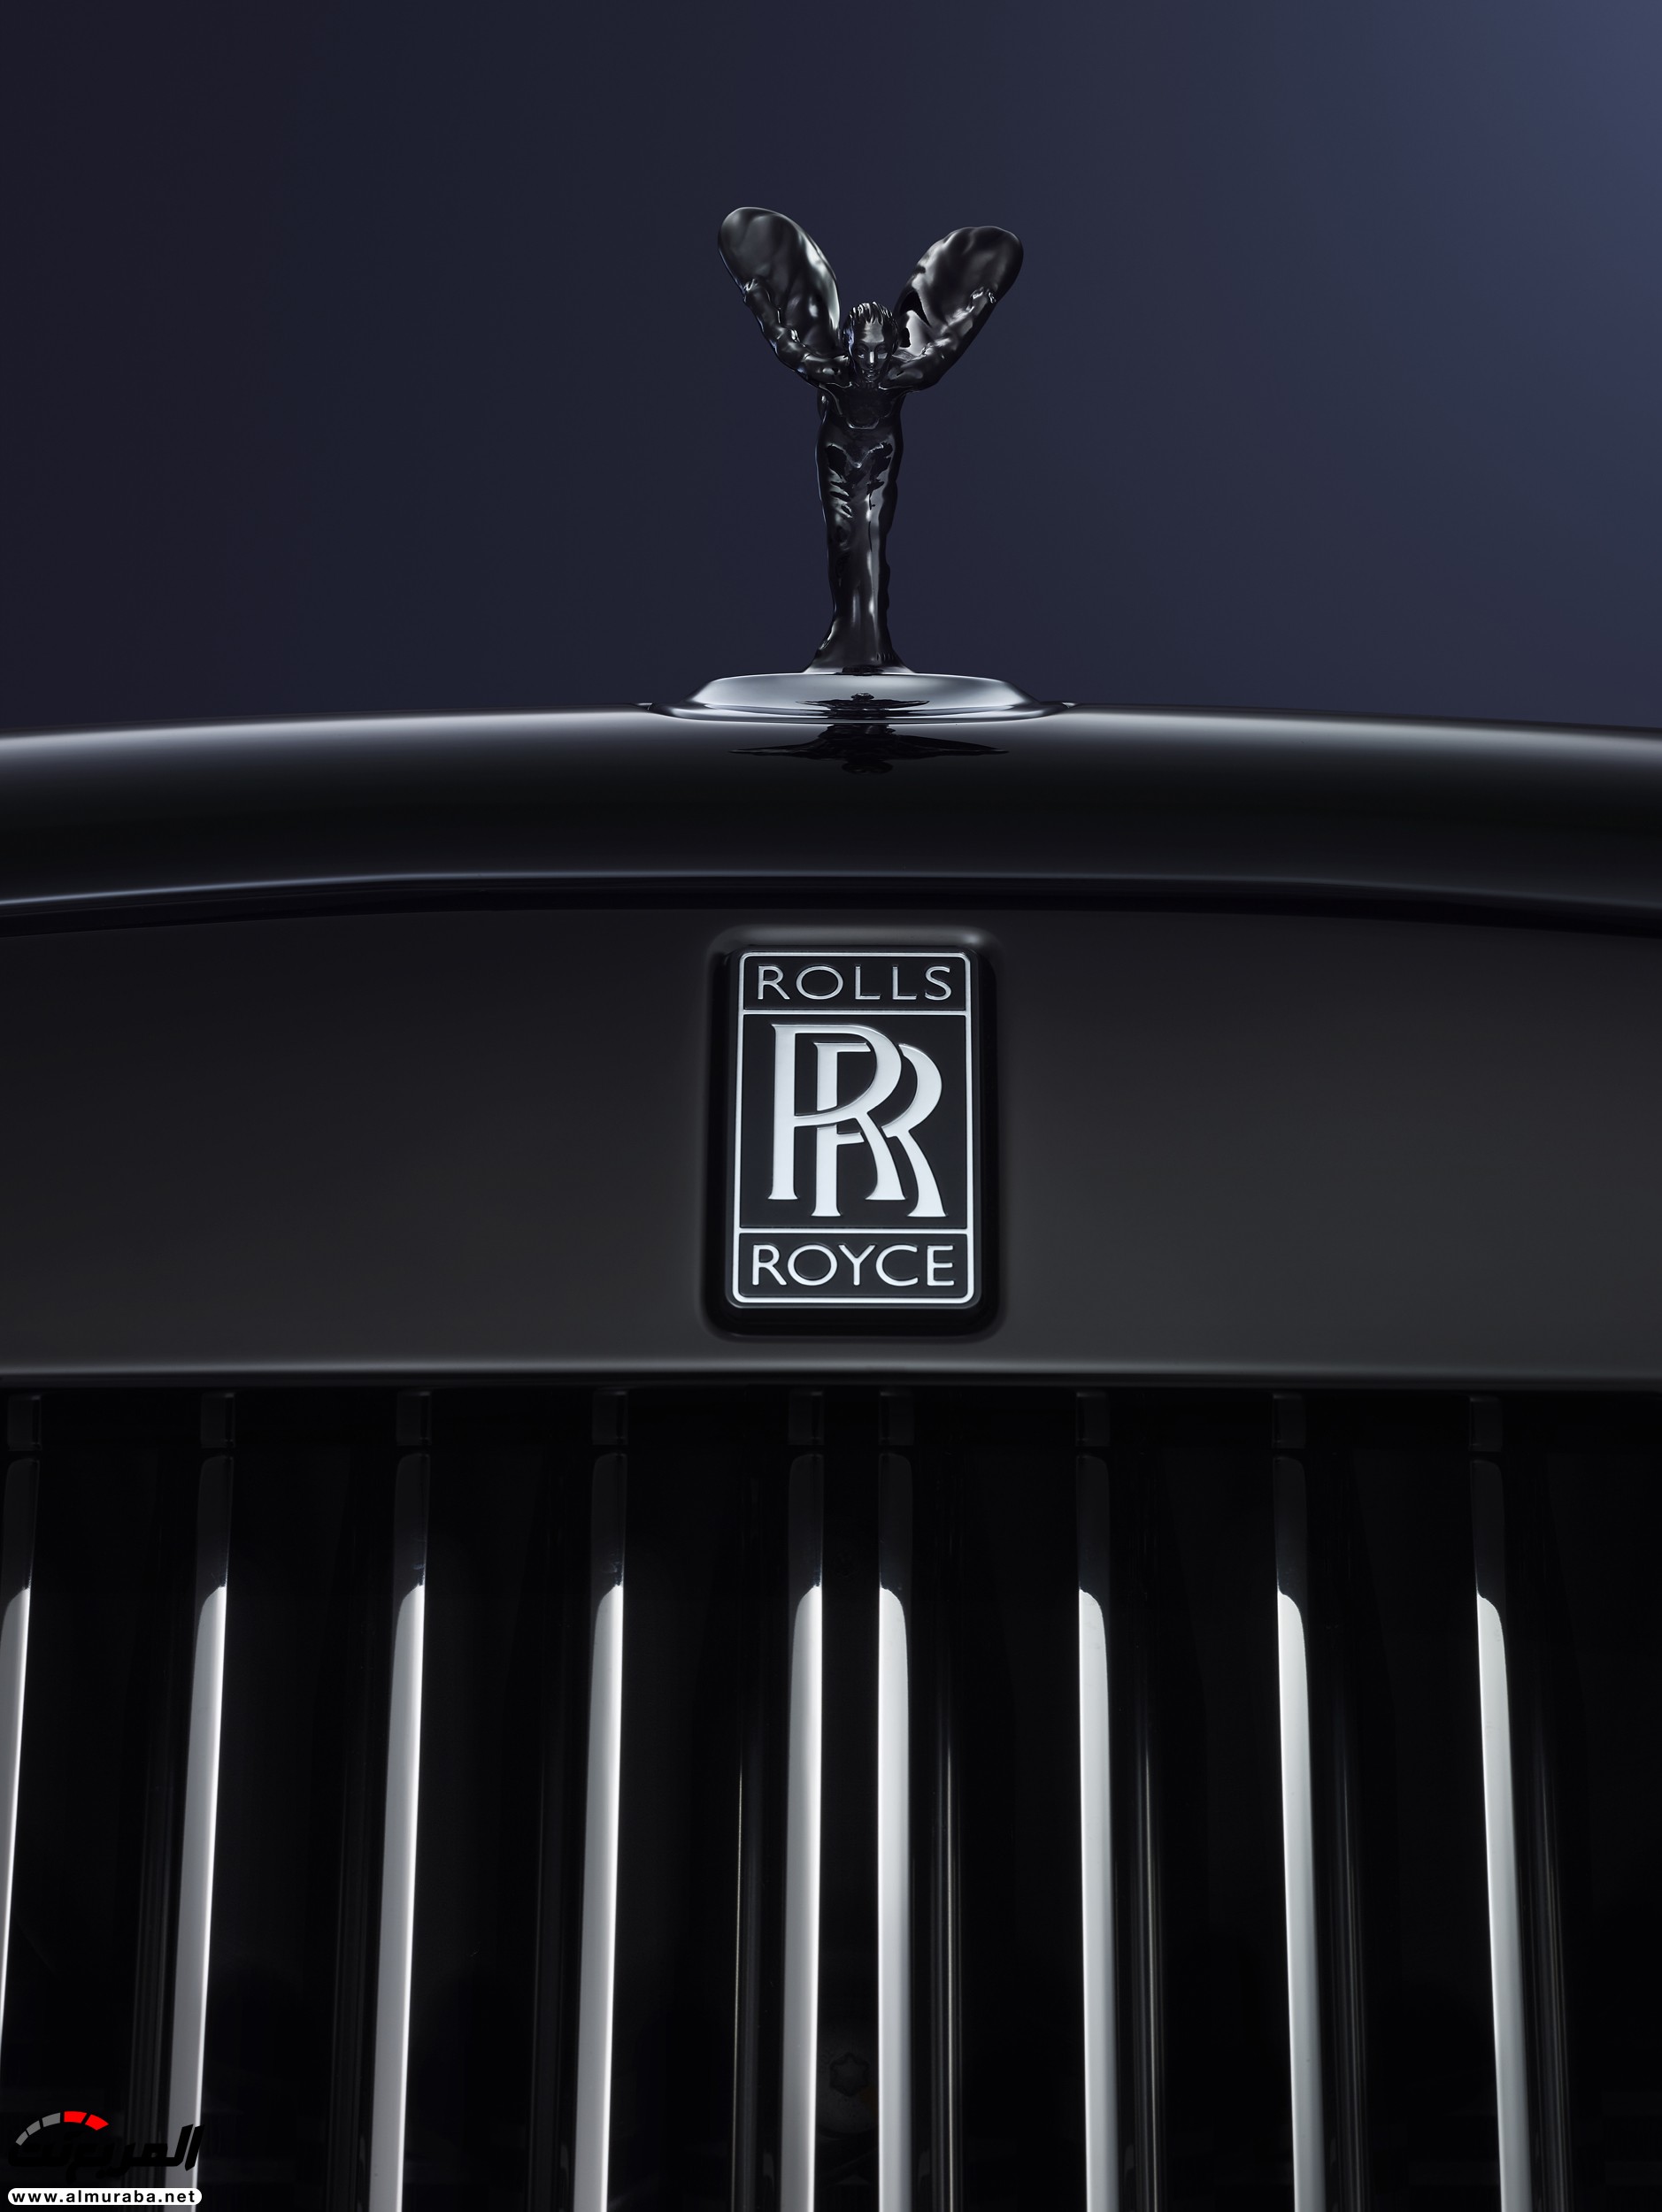 “رولز رويس موتور كارز” يُخلط بينها وبين “رولز رويس plc” المتورطة في فضيحة عالمية Rolls-Royce